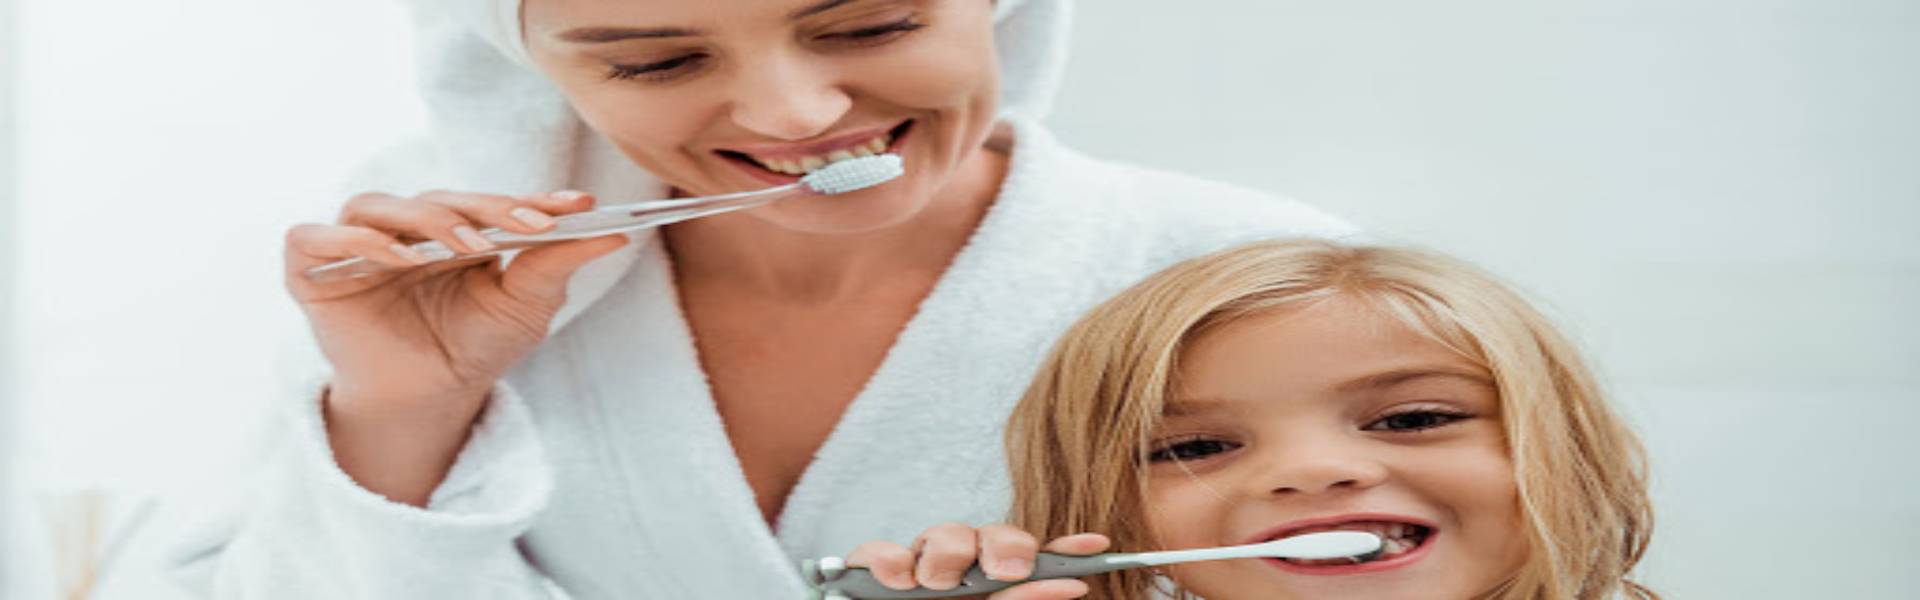 Odontopediatras/Odontólogos Unidos